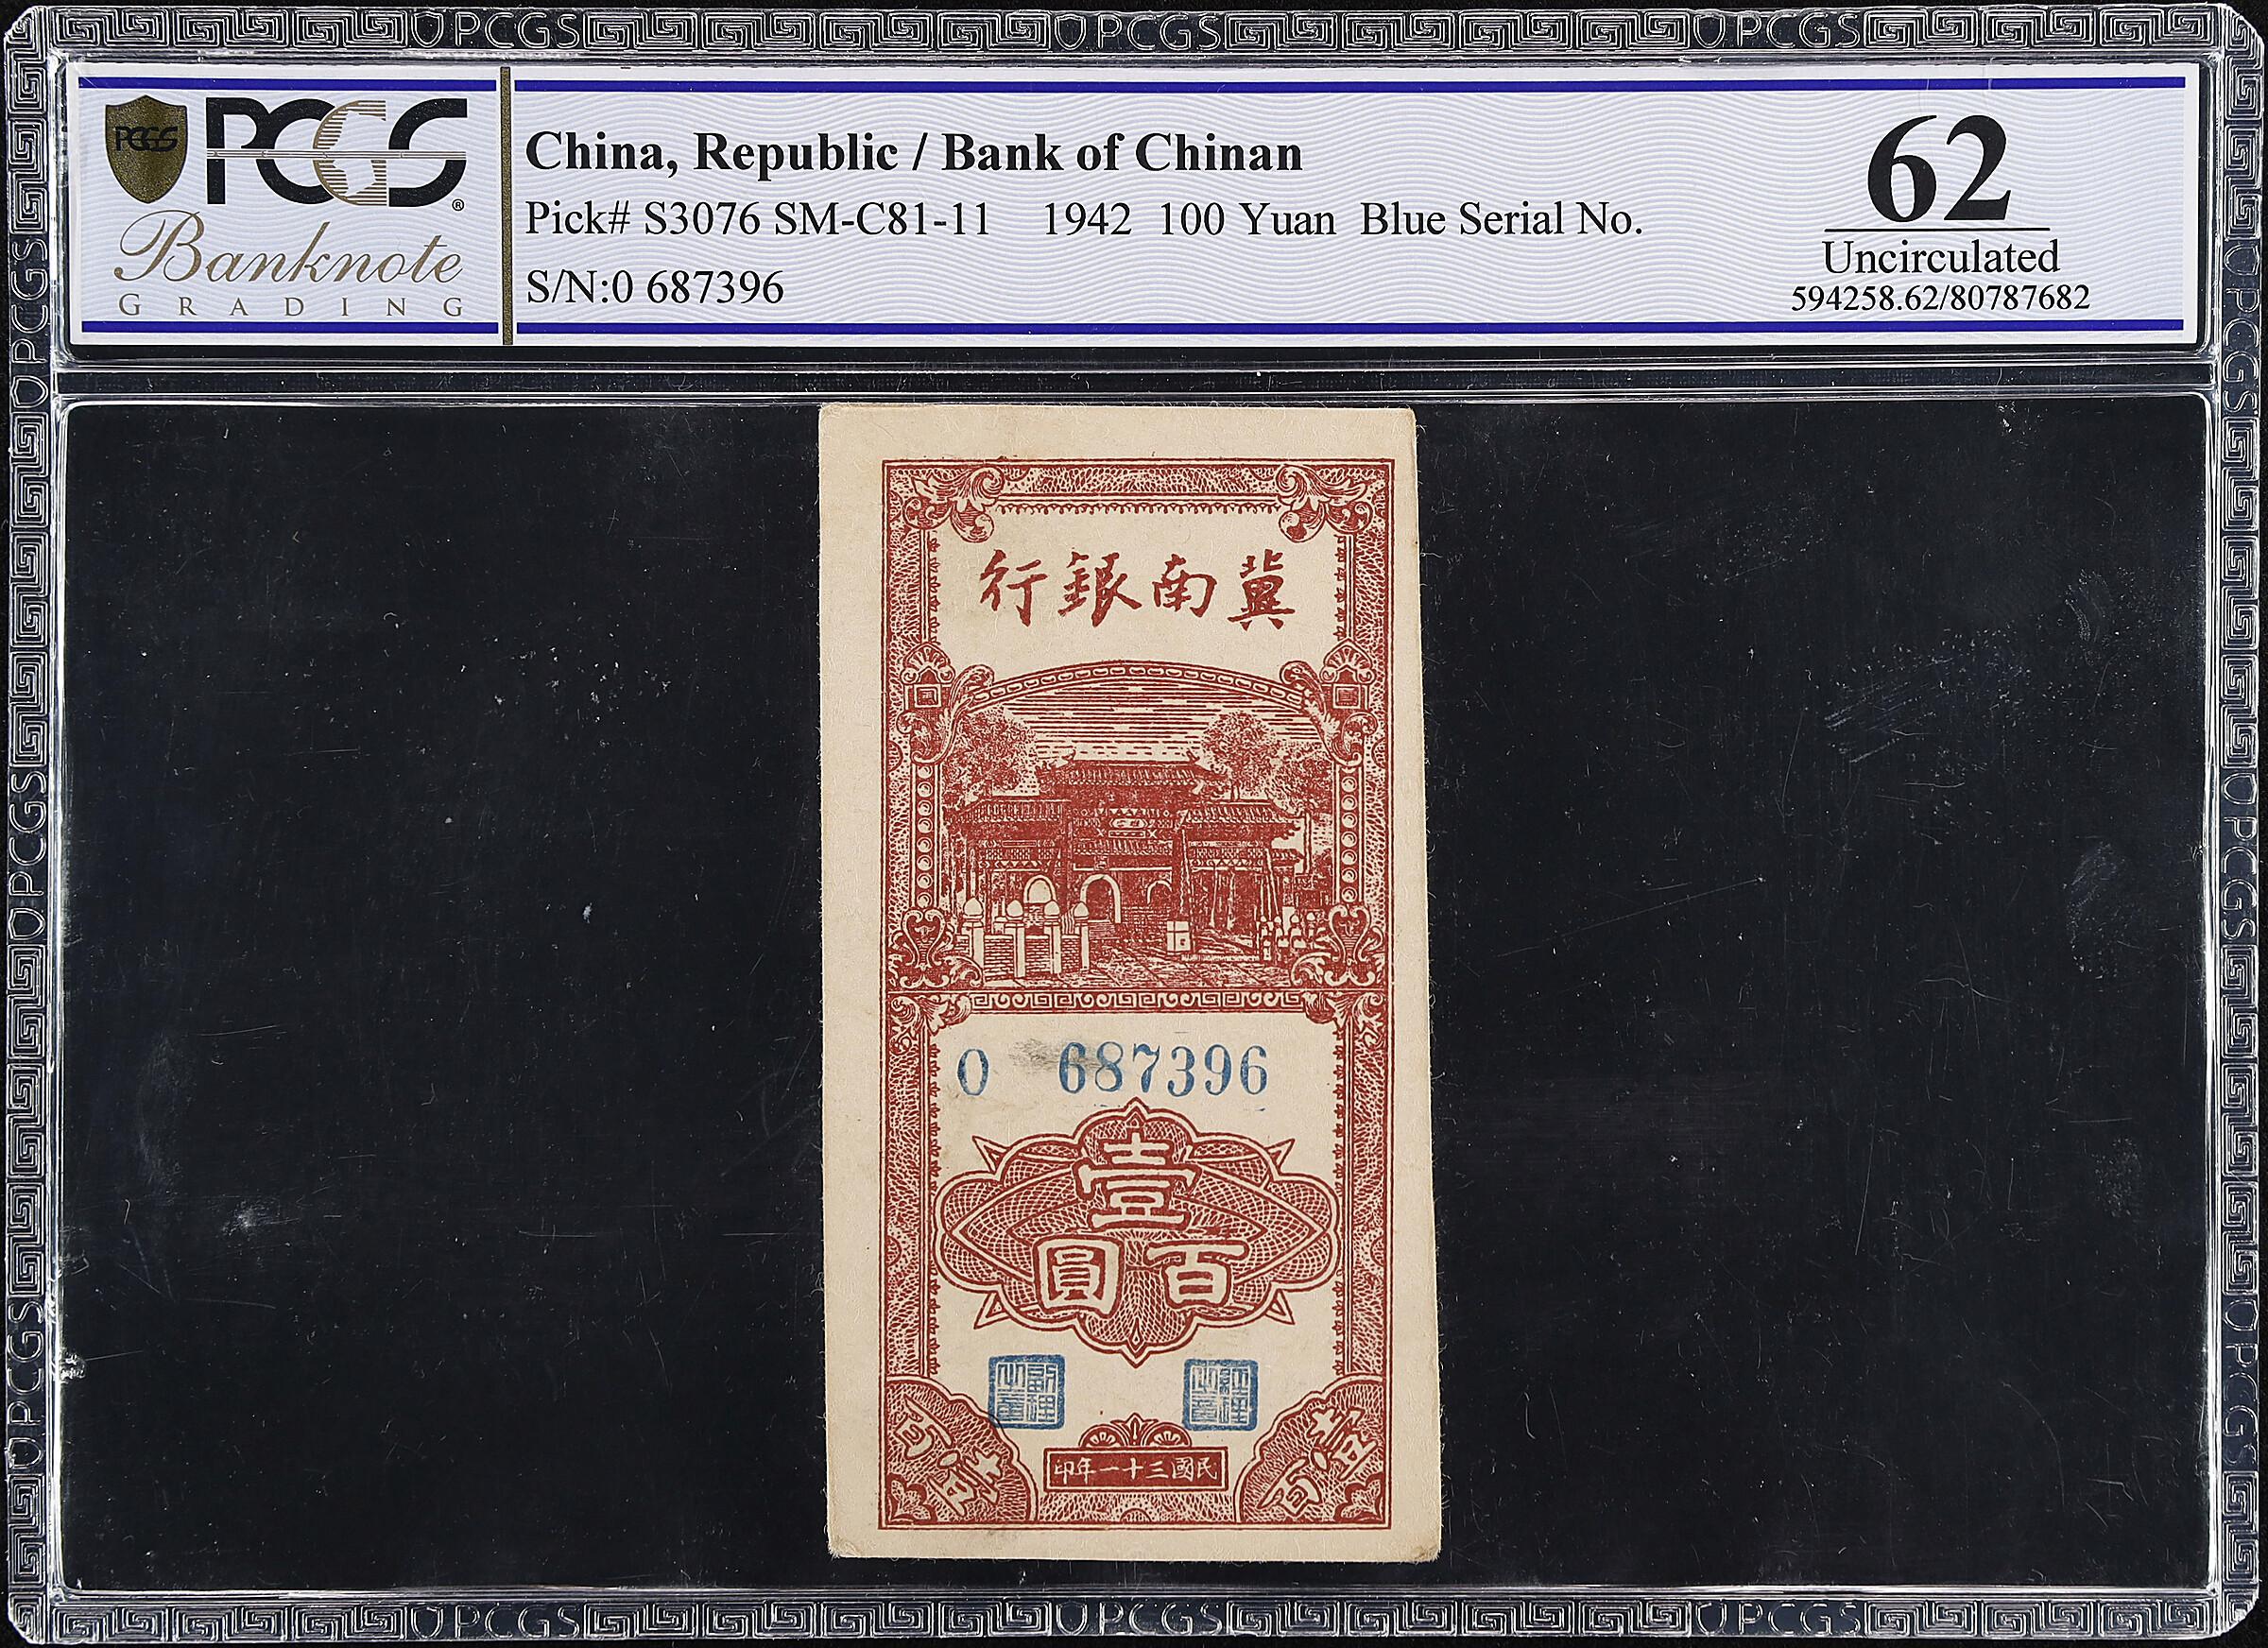 CC073 China Communist Banks. 1942 Bank of Chinan 100 Yuan P-S307